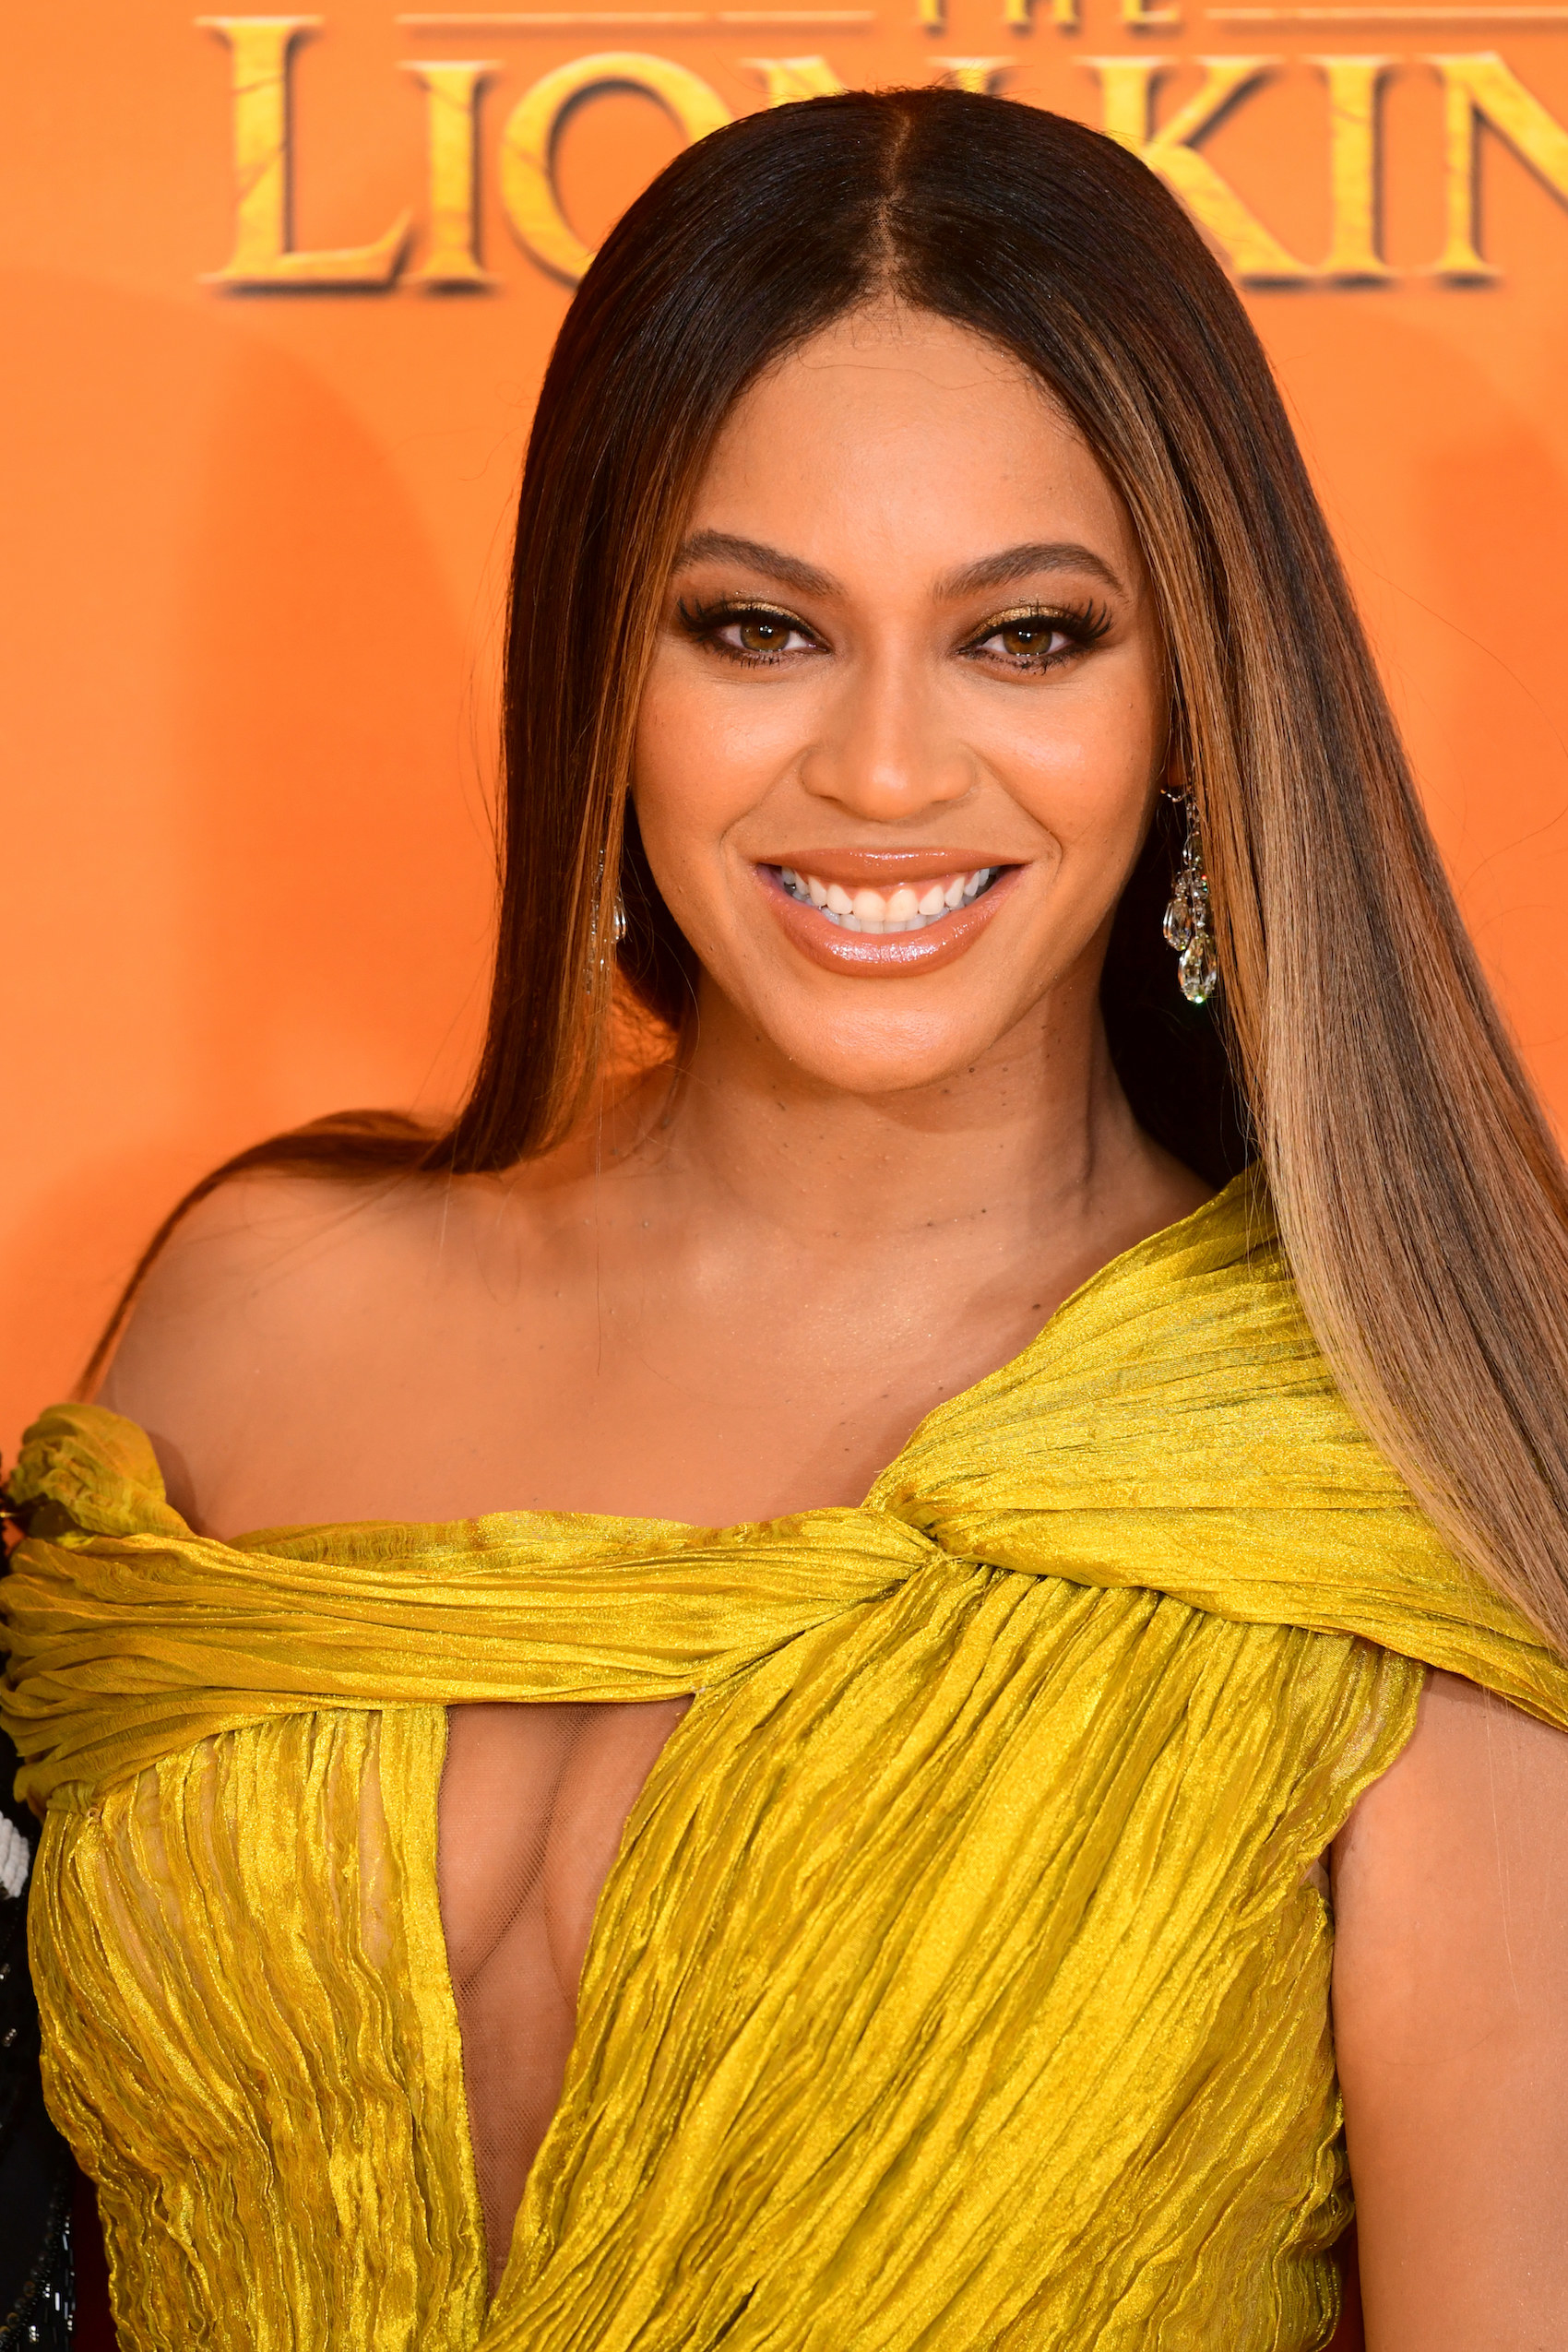 A close-up of Beyoncé smiling